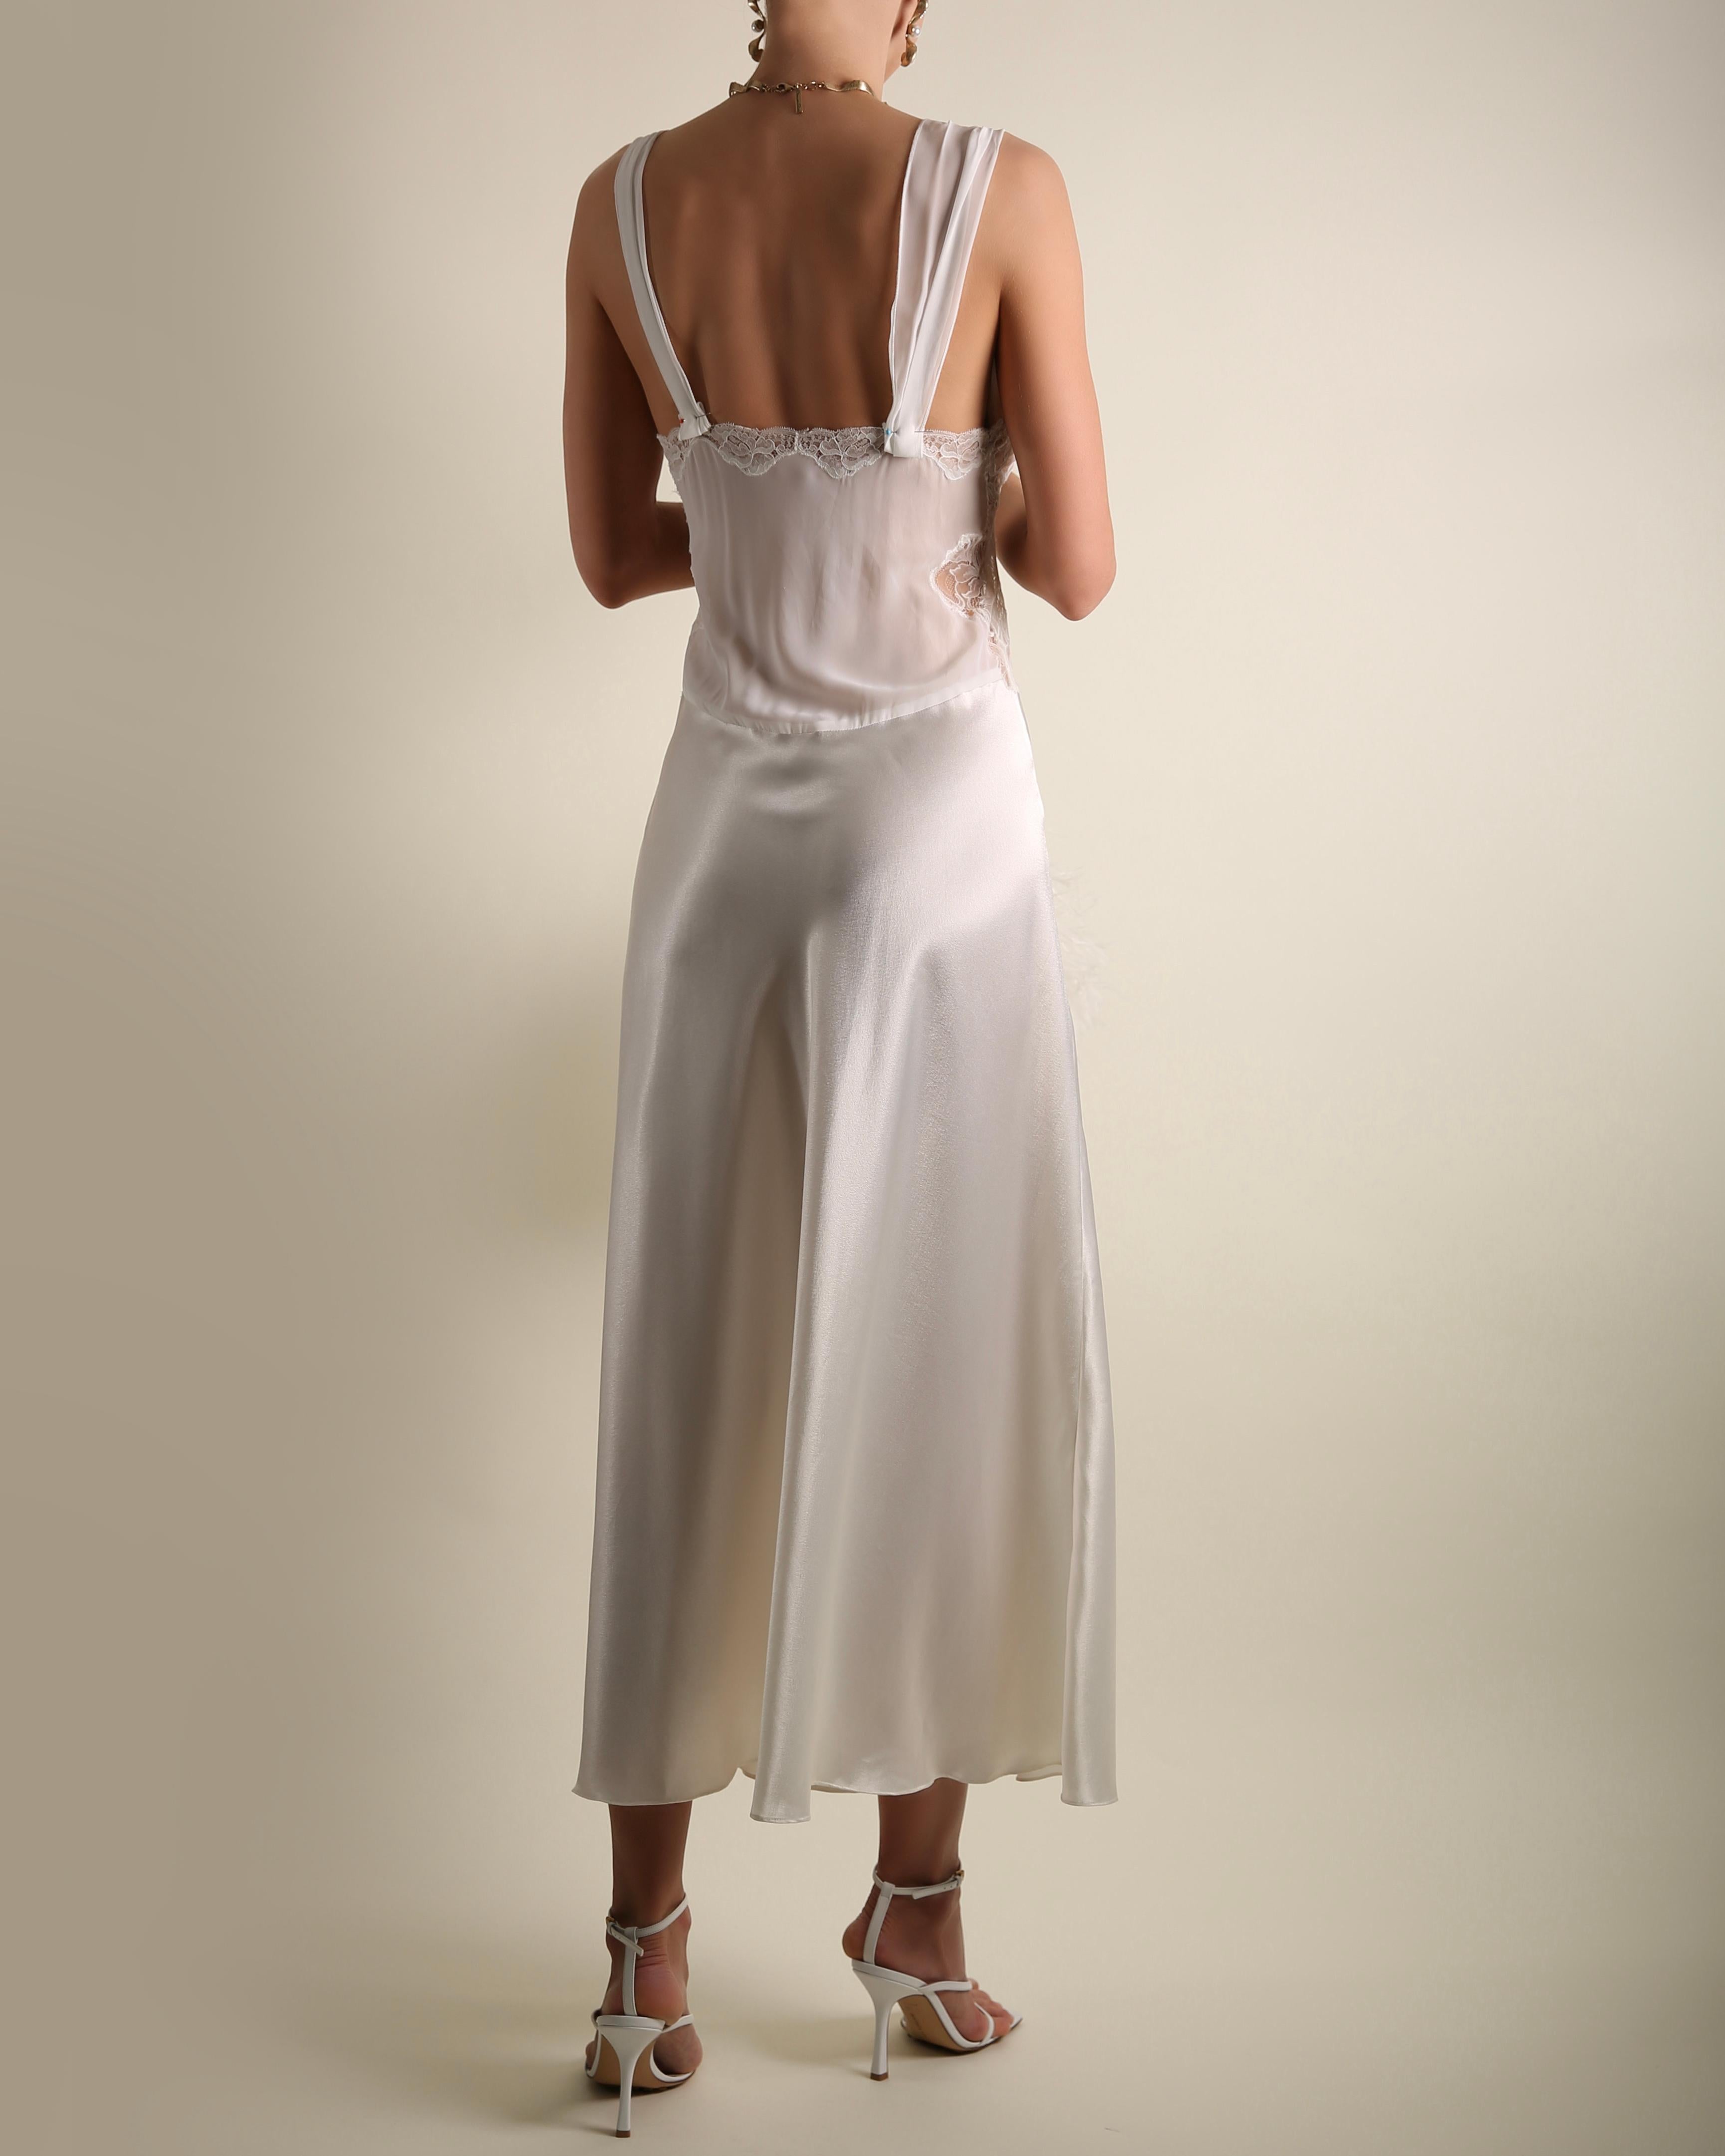 White Christian Dior vintage white ivory satin lace nightgown slip robe midi dress